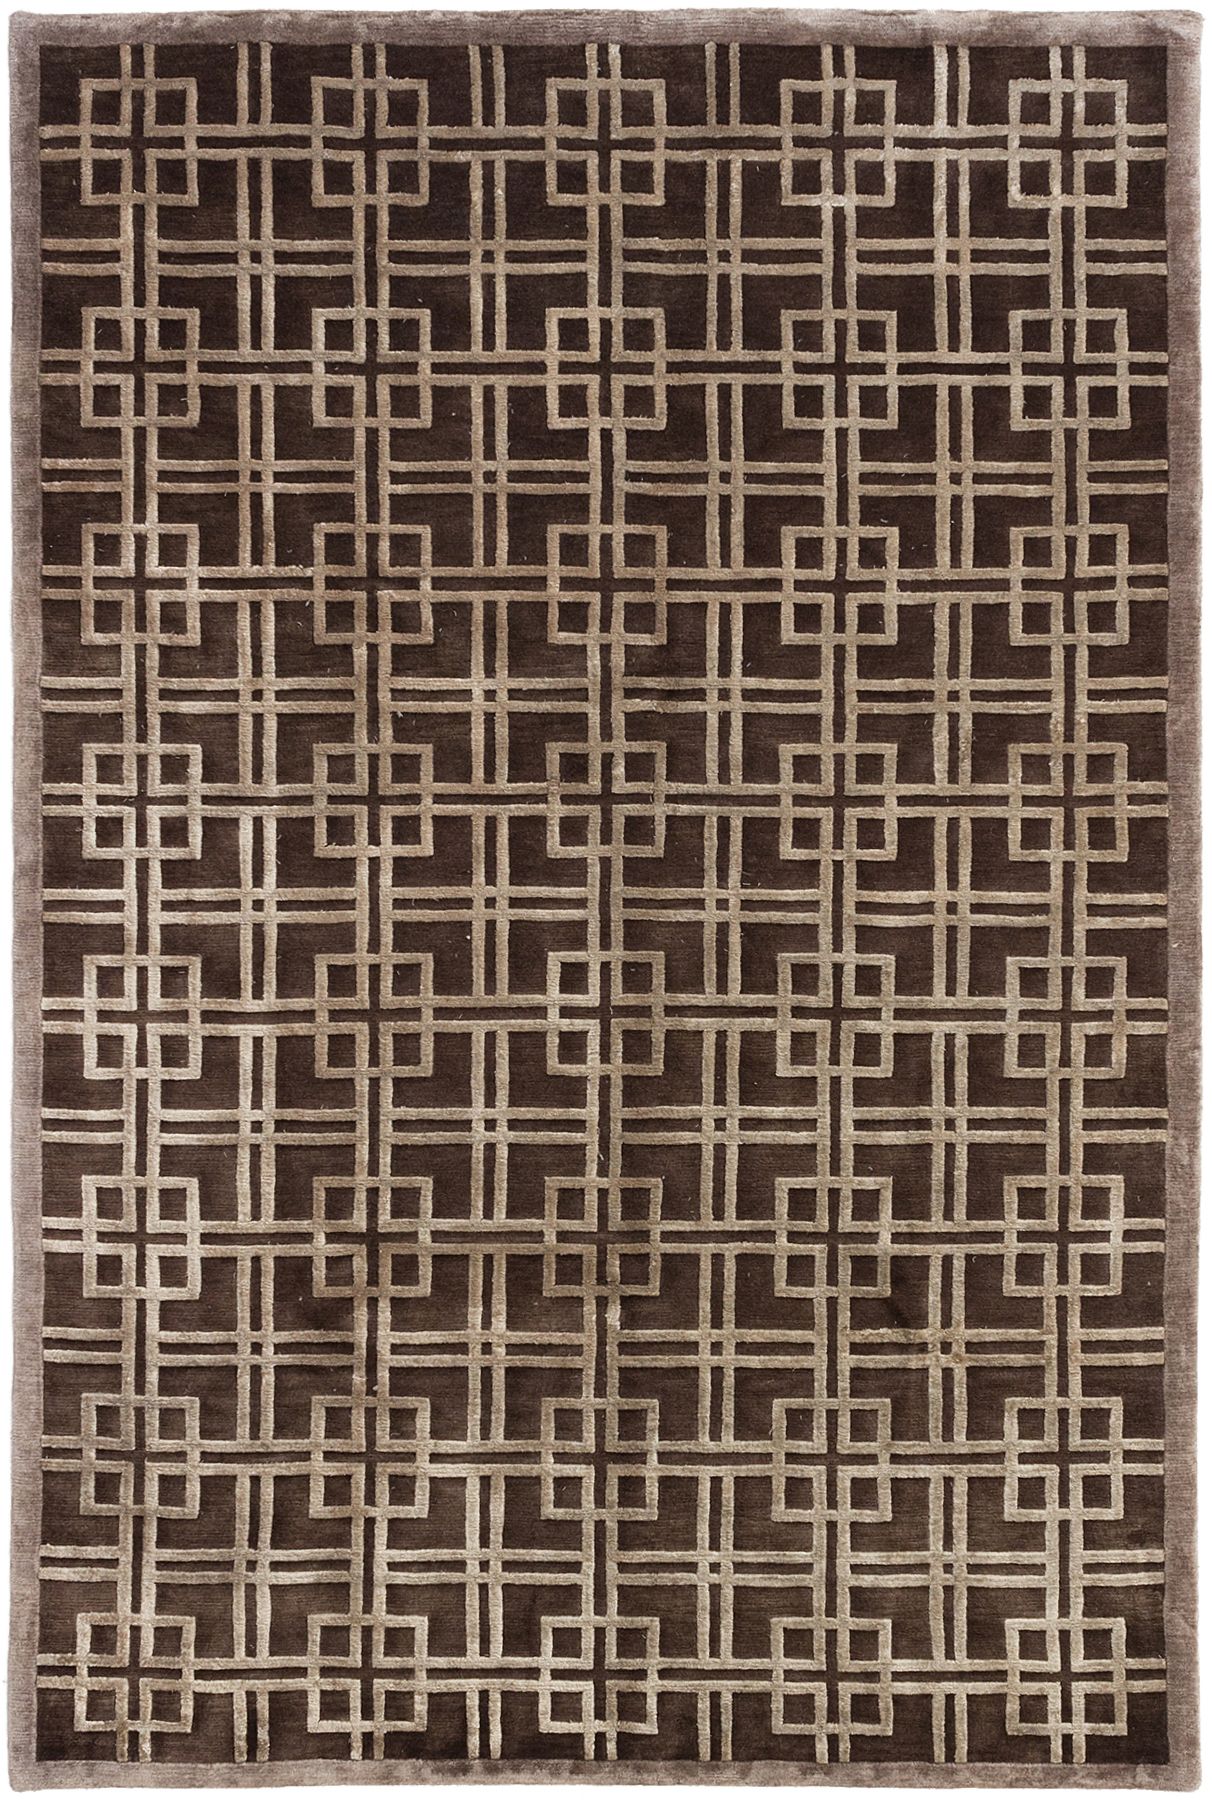 Hand-knotted Silk Touch Dark Brown Wool/Silk Rug 5'7" x 8'6" Size: 5'7" x 8'6"  